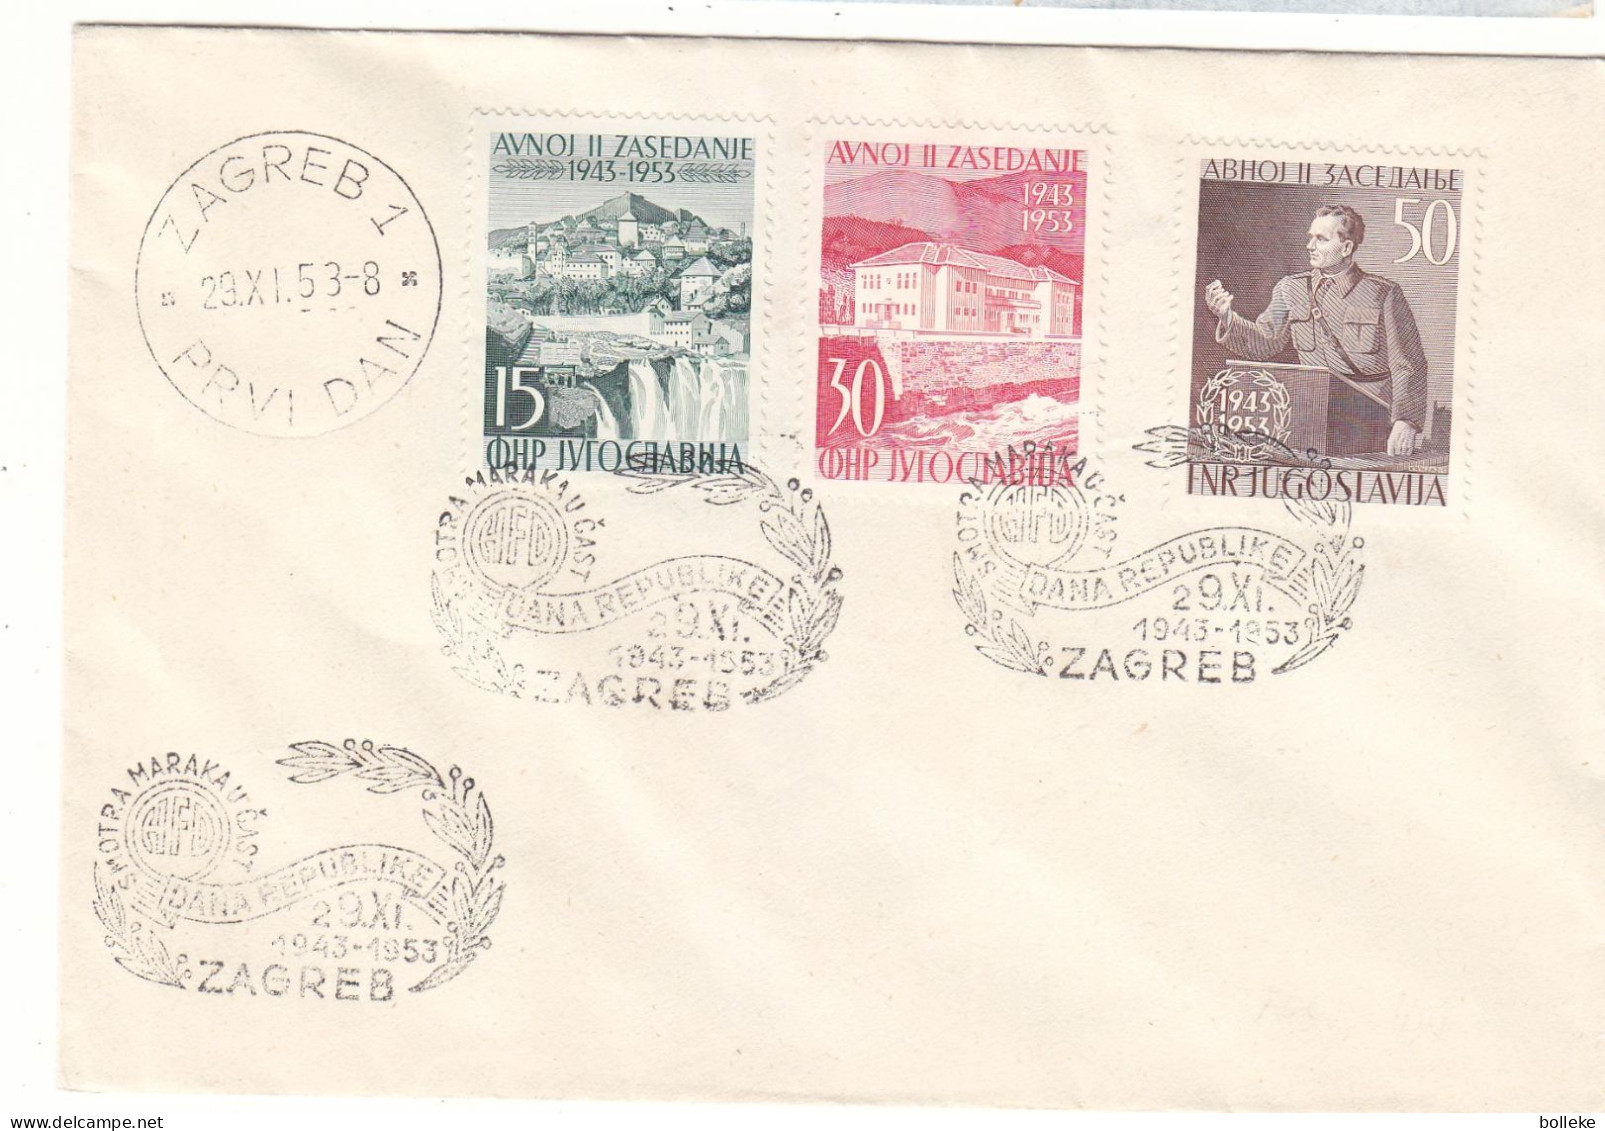 Yougoslavie - Lettre De 1953 - Oblit Zagreb - Tito - Chutes D'eaux - Valeur 60,00 Euros - Storia Postale